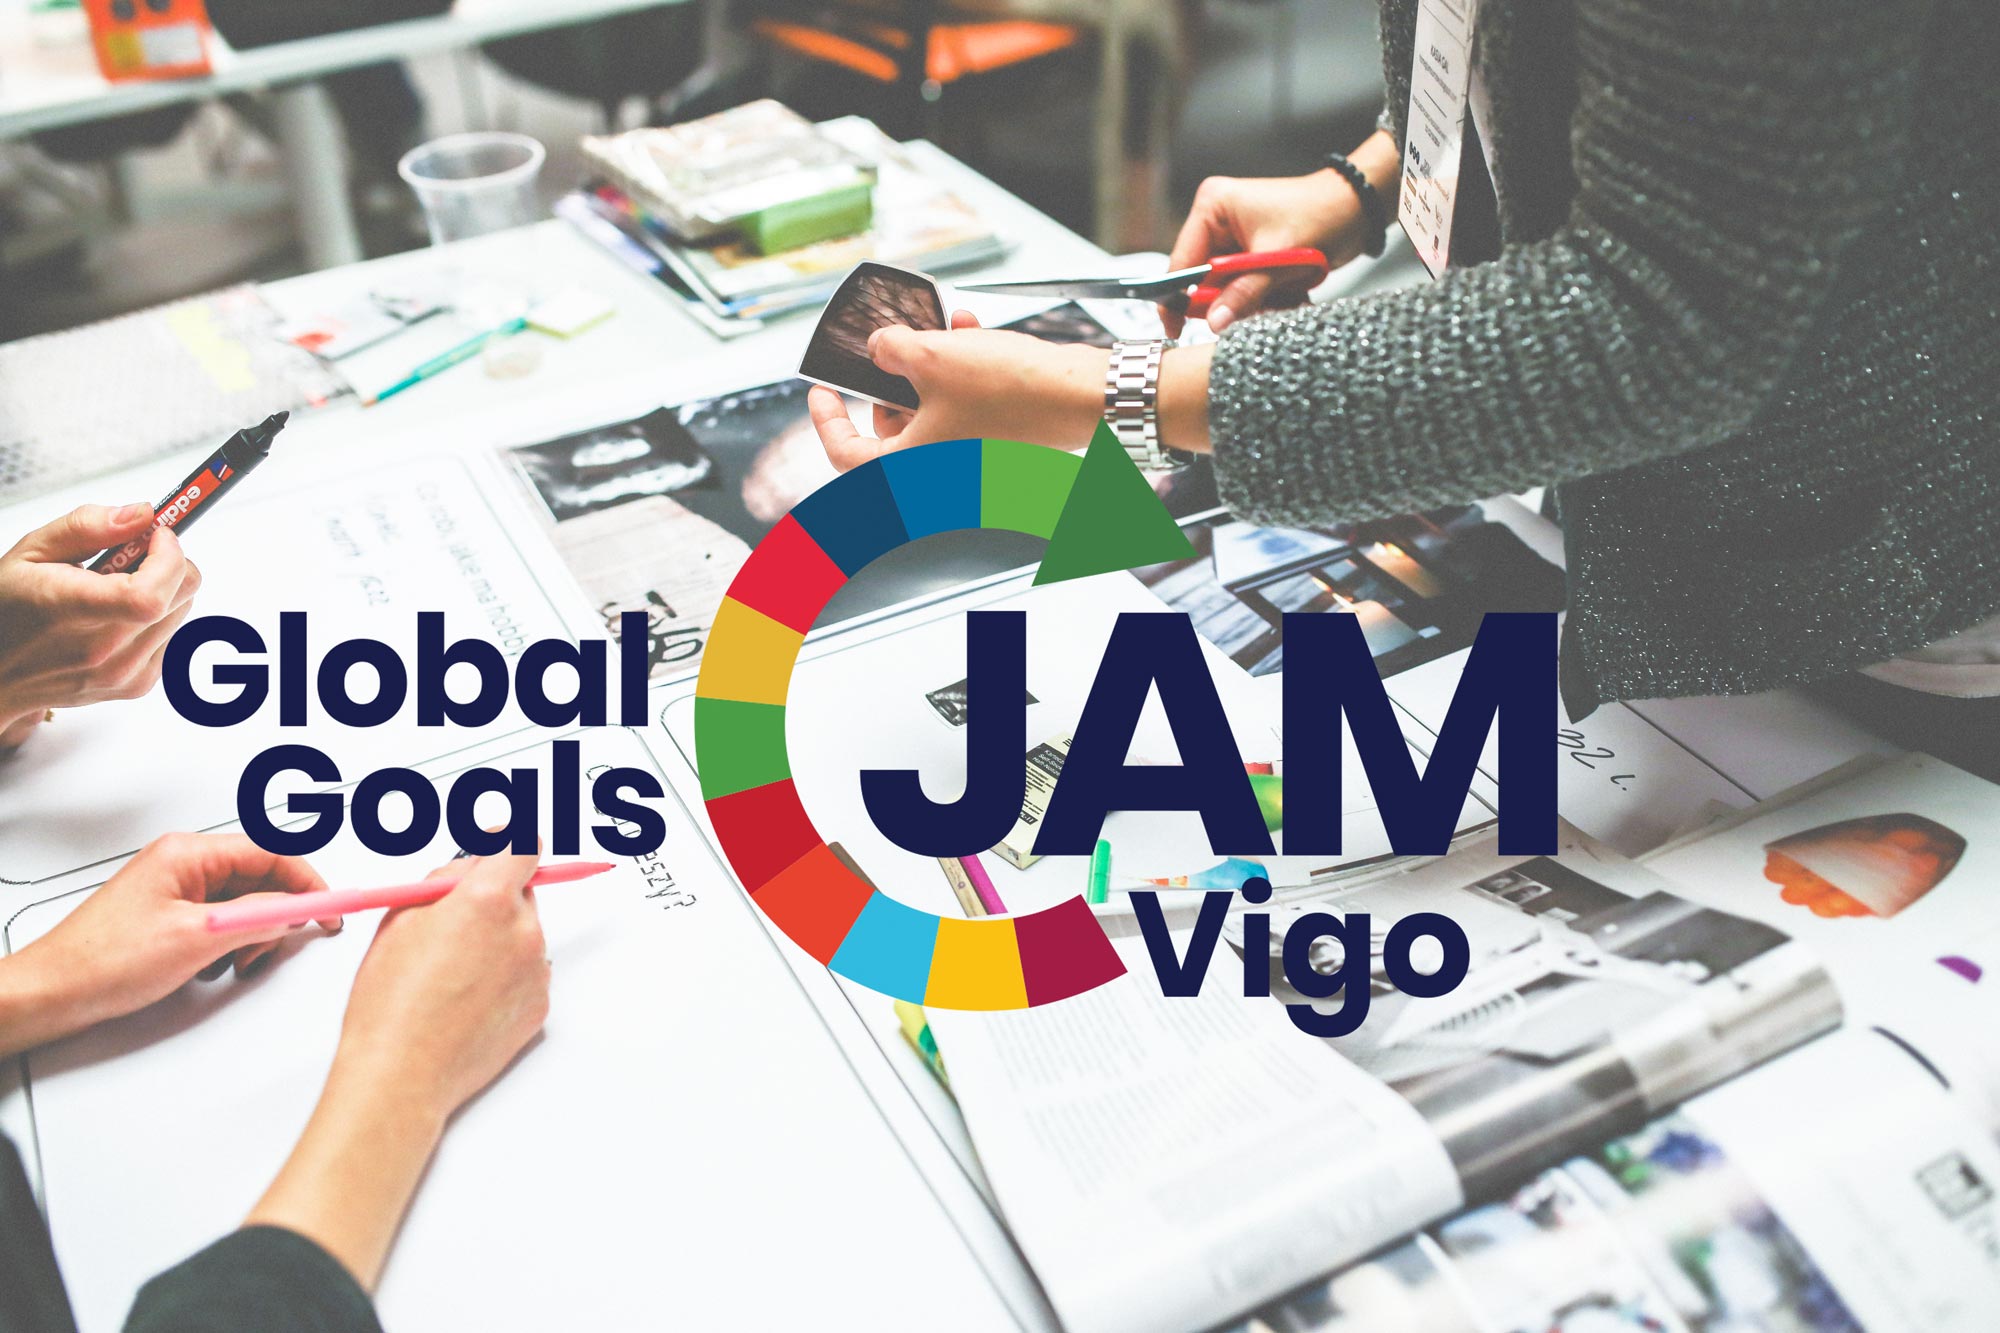 Vigo Global Goals Jam